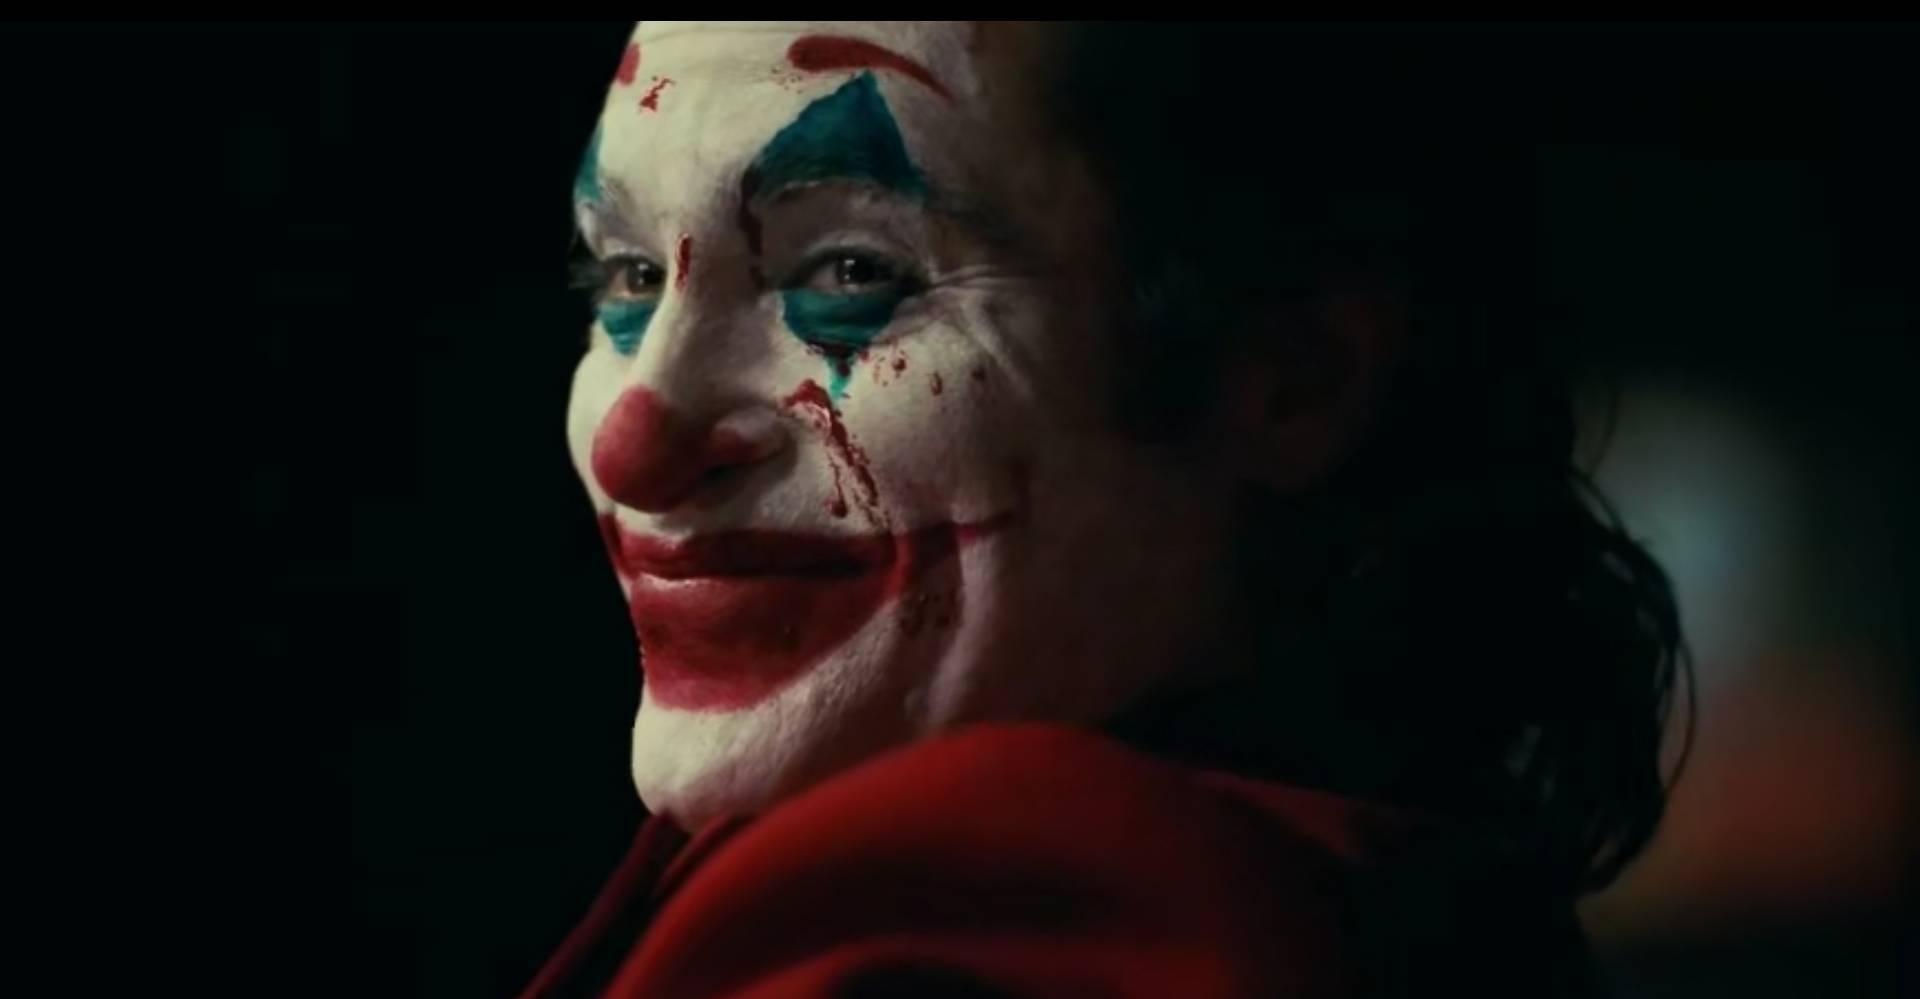 如何评价 2019 电影《小丑》(joker)? 